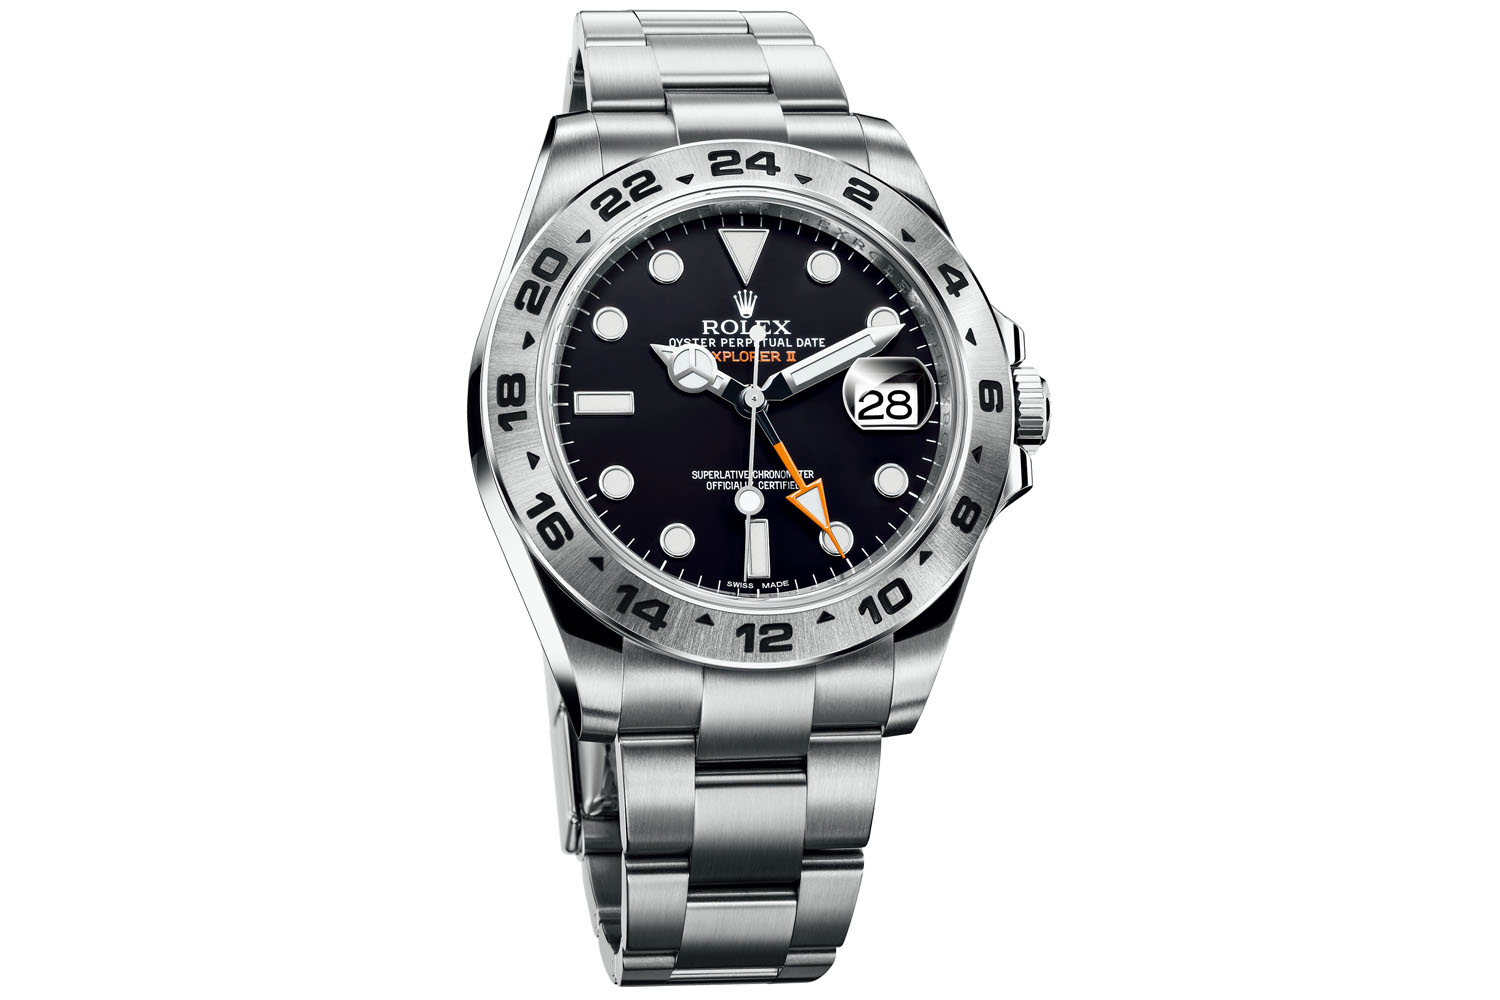 ロレックス 世界一の知名度を誇る実用腕時計ブランド 腕時計ライフ 第6回 Pictures